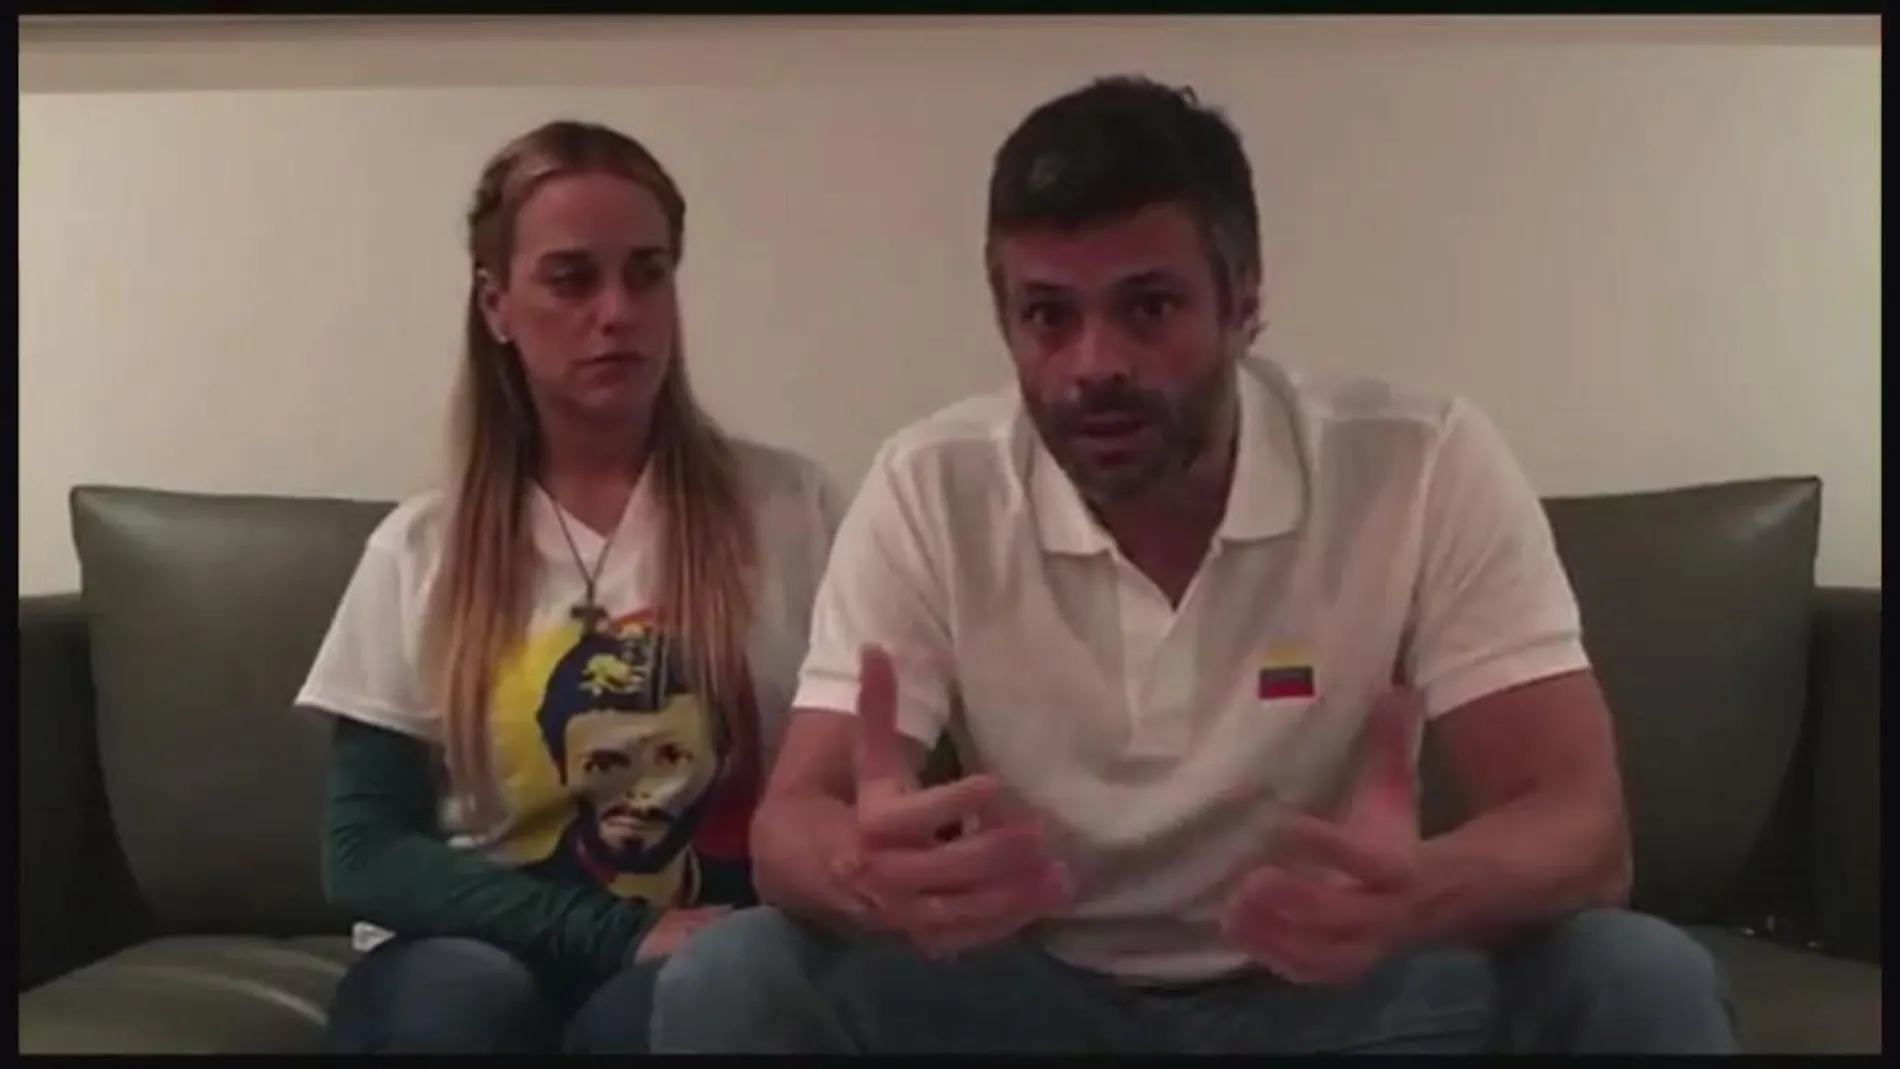 Leopoldo López fue detenido tras divulgar un vídeo junto a su mujer